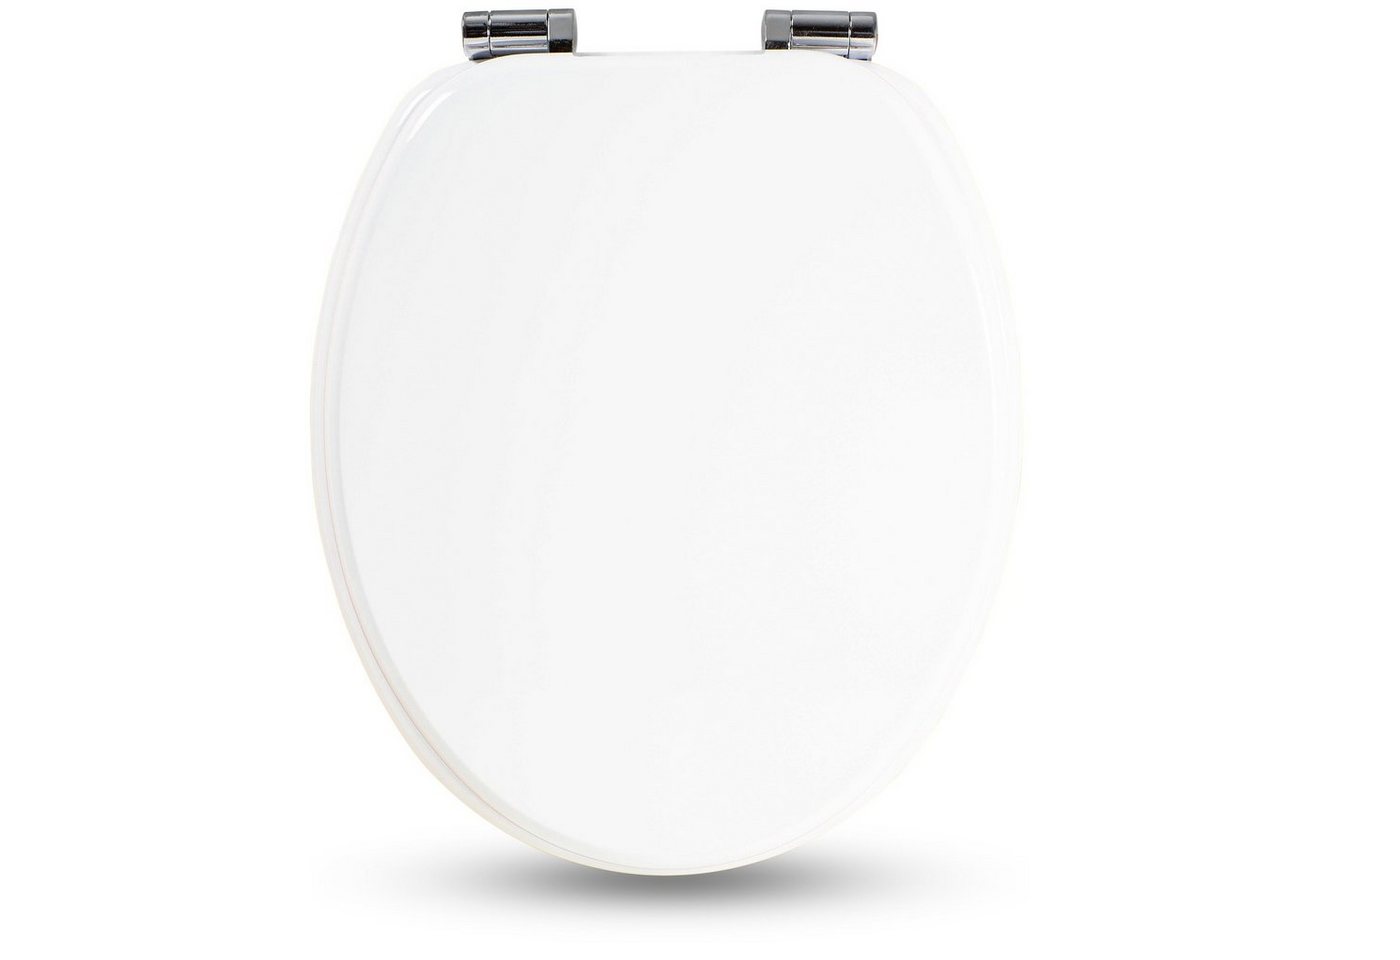 Sanfino WC-Sitz White“ Premium Toilettendeckel mit Absenkautomatik aus Holz, bunter WC Sitz mit Motiv, hoher Sitzkomfort, einfache Montage" von Sanfino